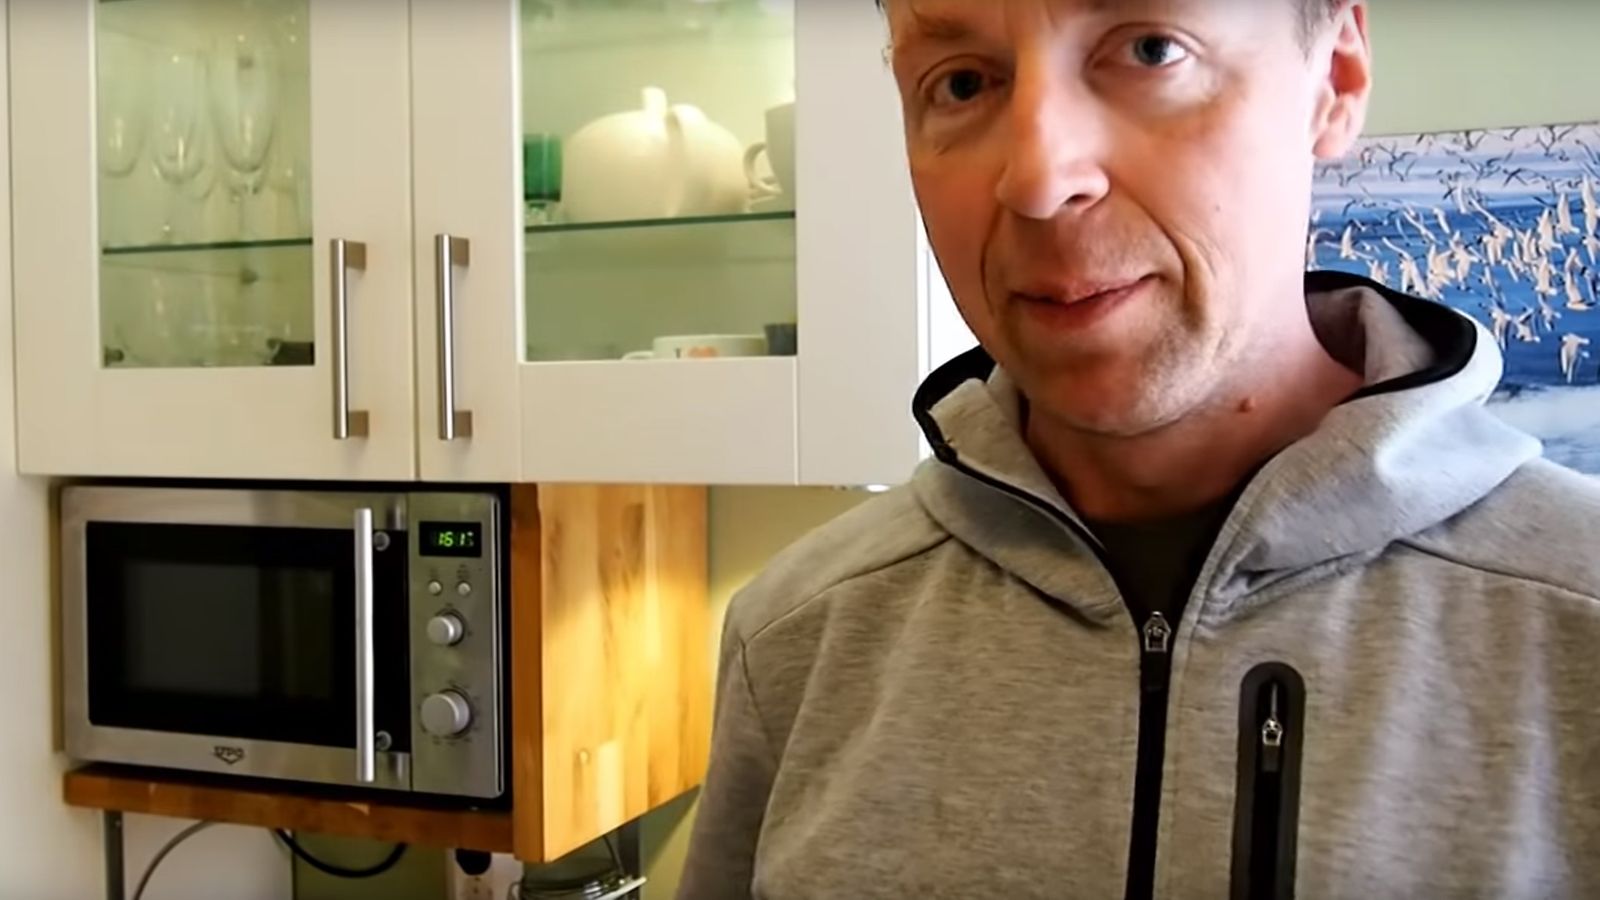 Jussi Halla-ahon yllättävät somepäivitykset jatkuvat – paljastaa  13-minuuttisella videolla tulosillassa mainitsemansa keittoreseptin  tyttärensä avustuksella 